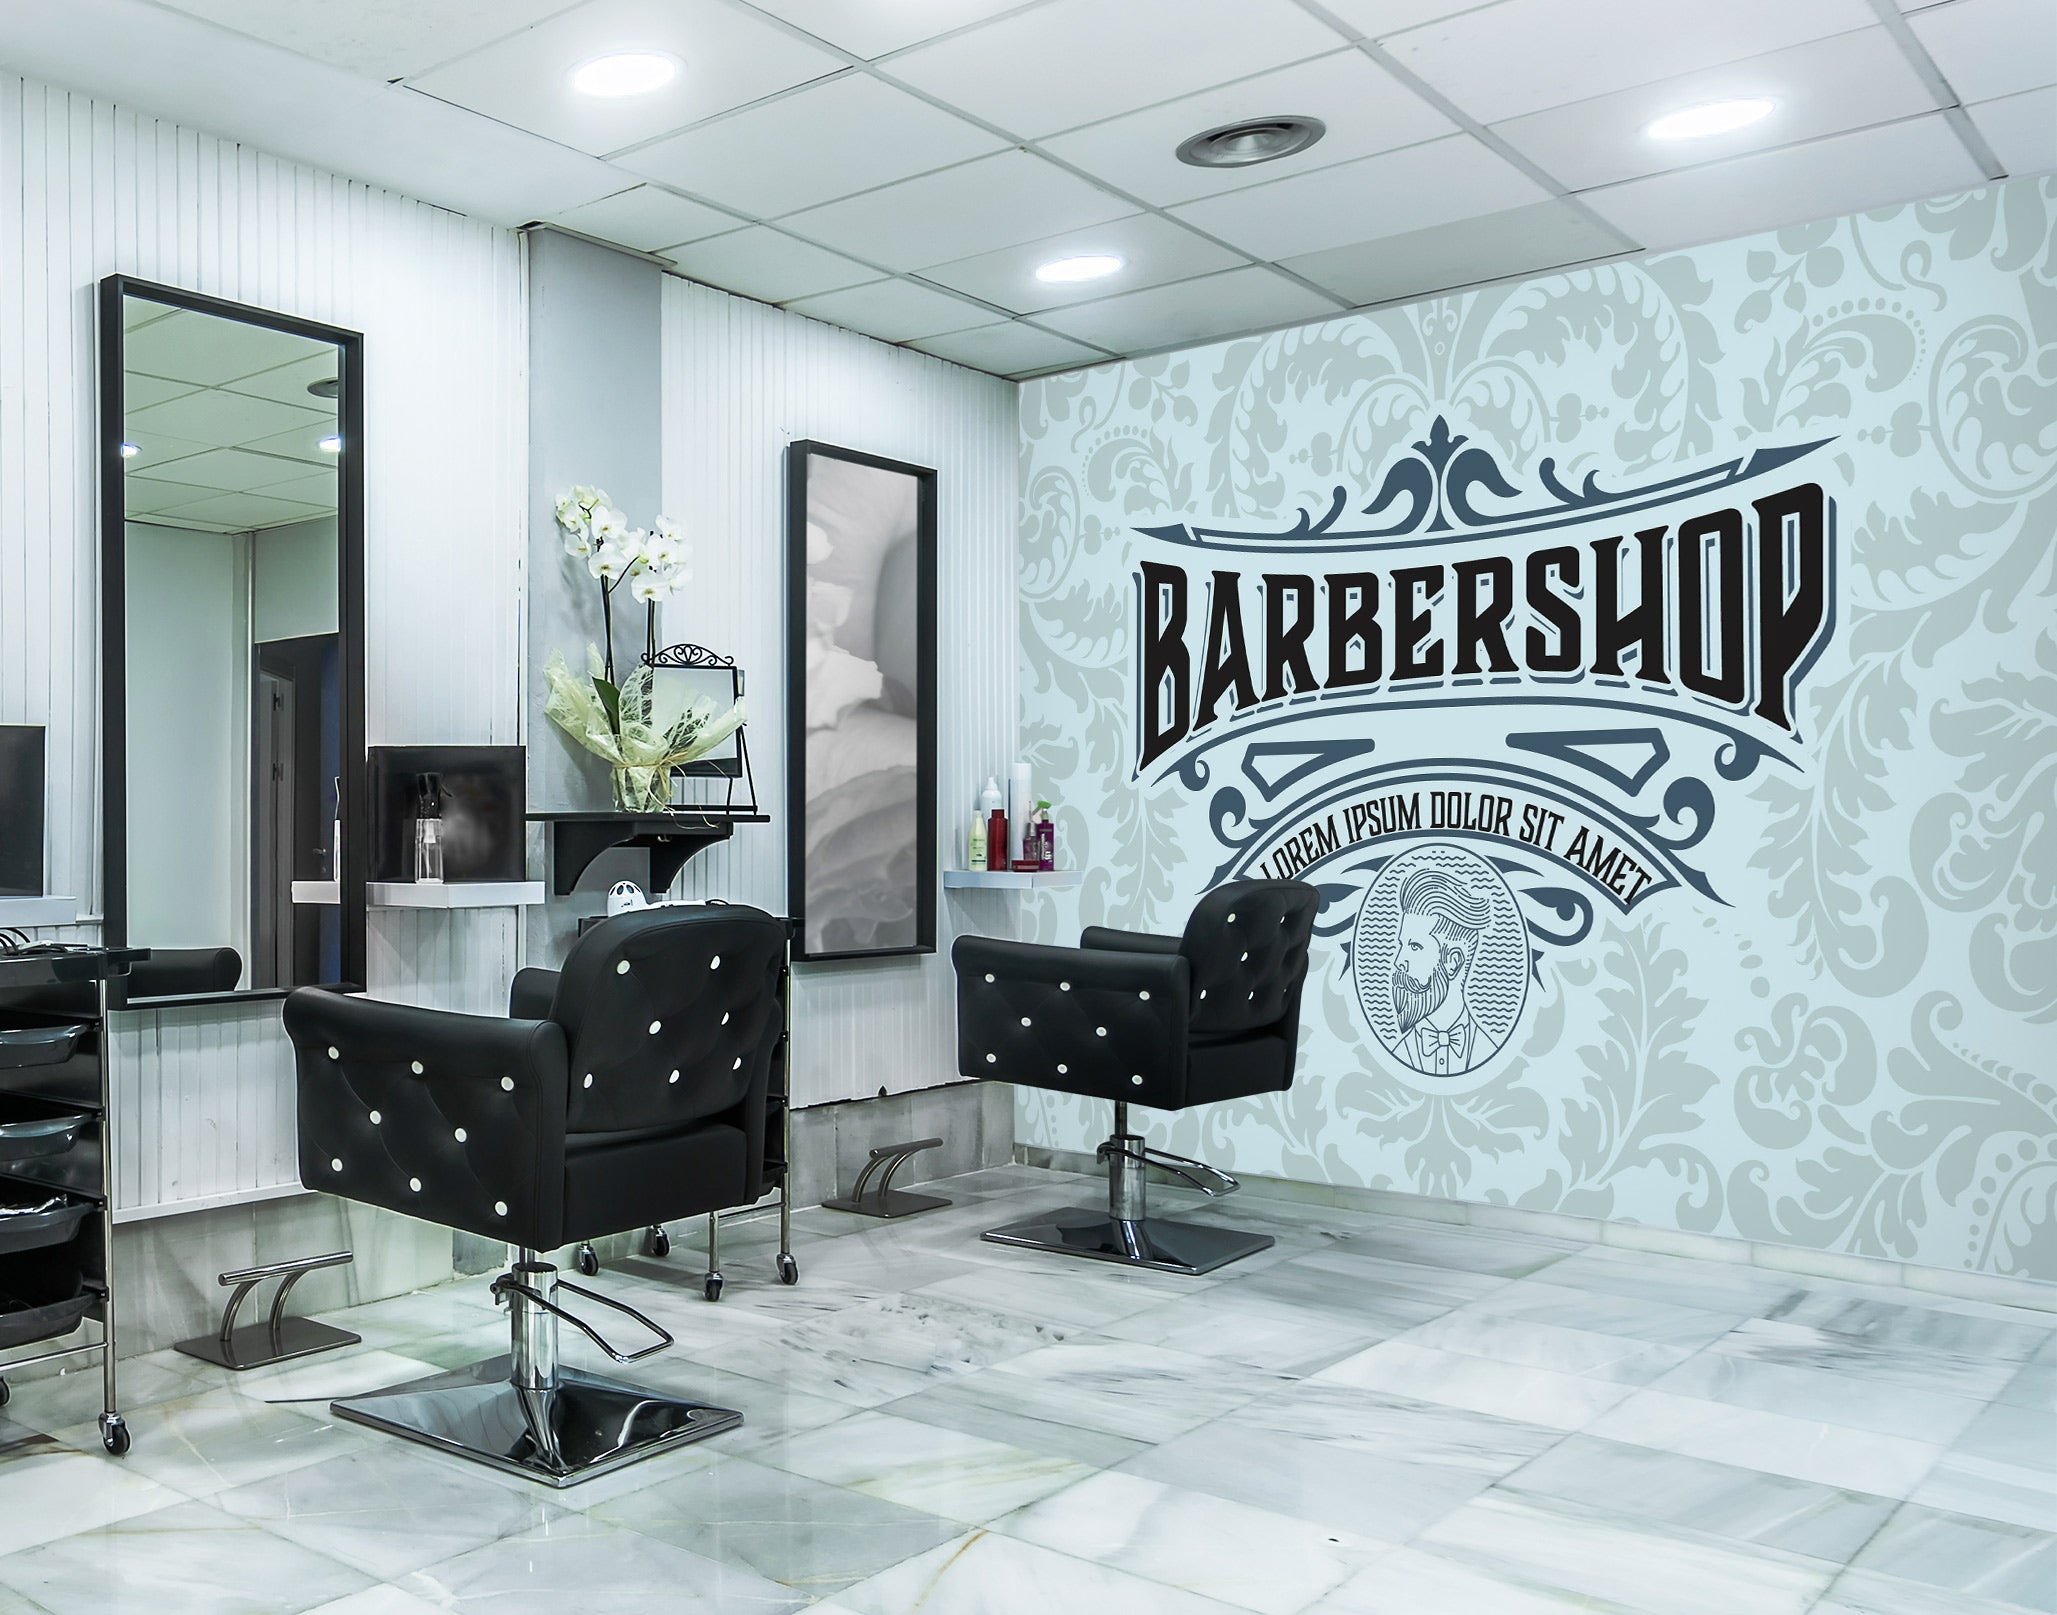 3D Barber Shop Font 115206 Barber Shop Wall Murals